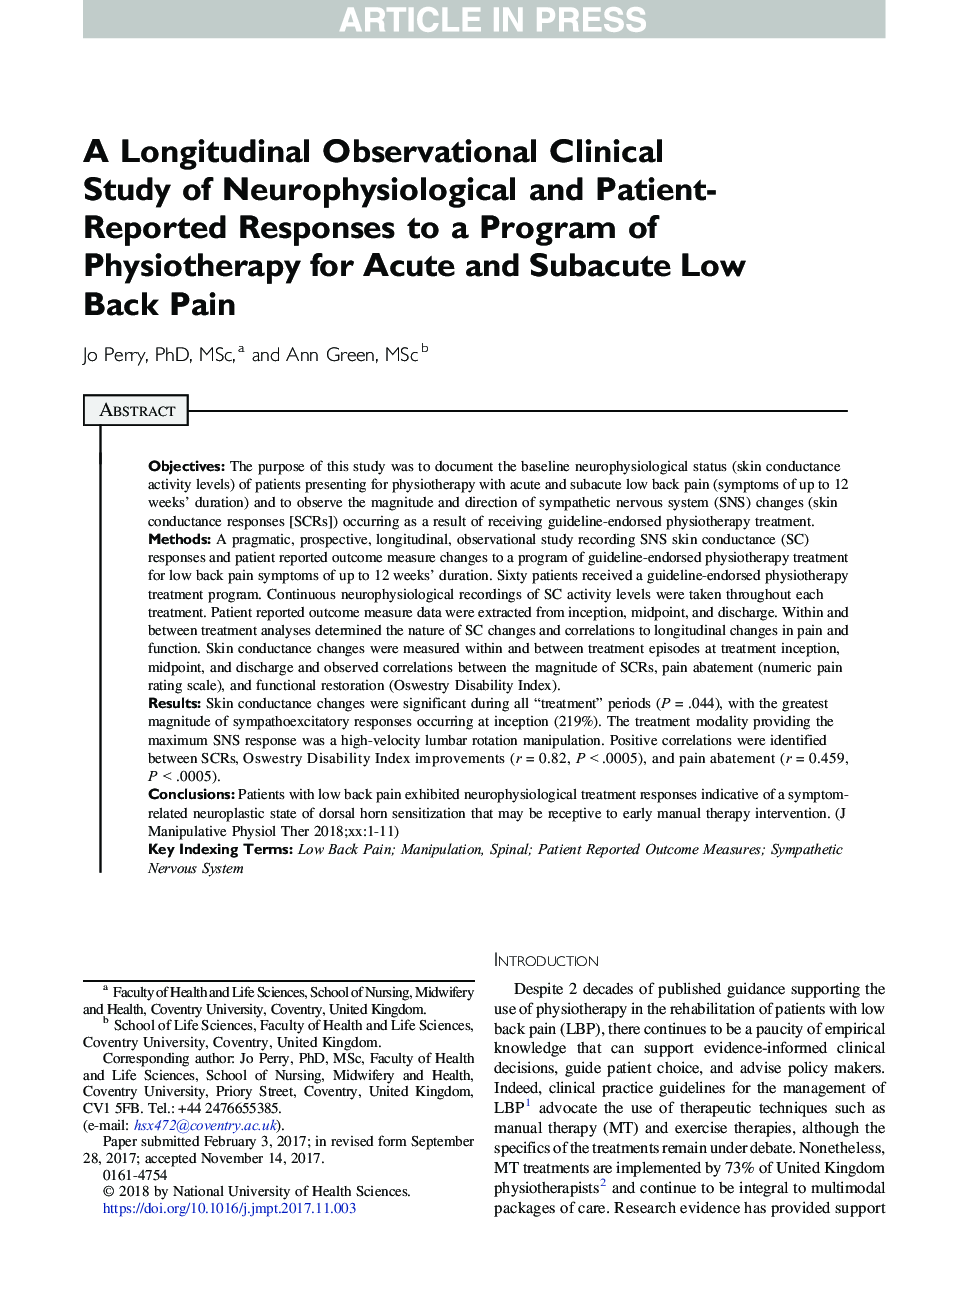 یک مطالعه بالینی مشاهداتی طولانی از پاسخ های نوروفیزیولوژیک و گزارش شده بیمار به برنامه فیزیوتراپی برای کمردرد حاد و زیر حاد